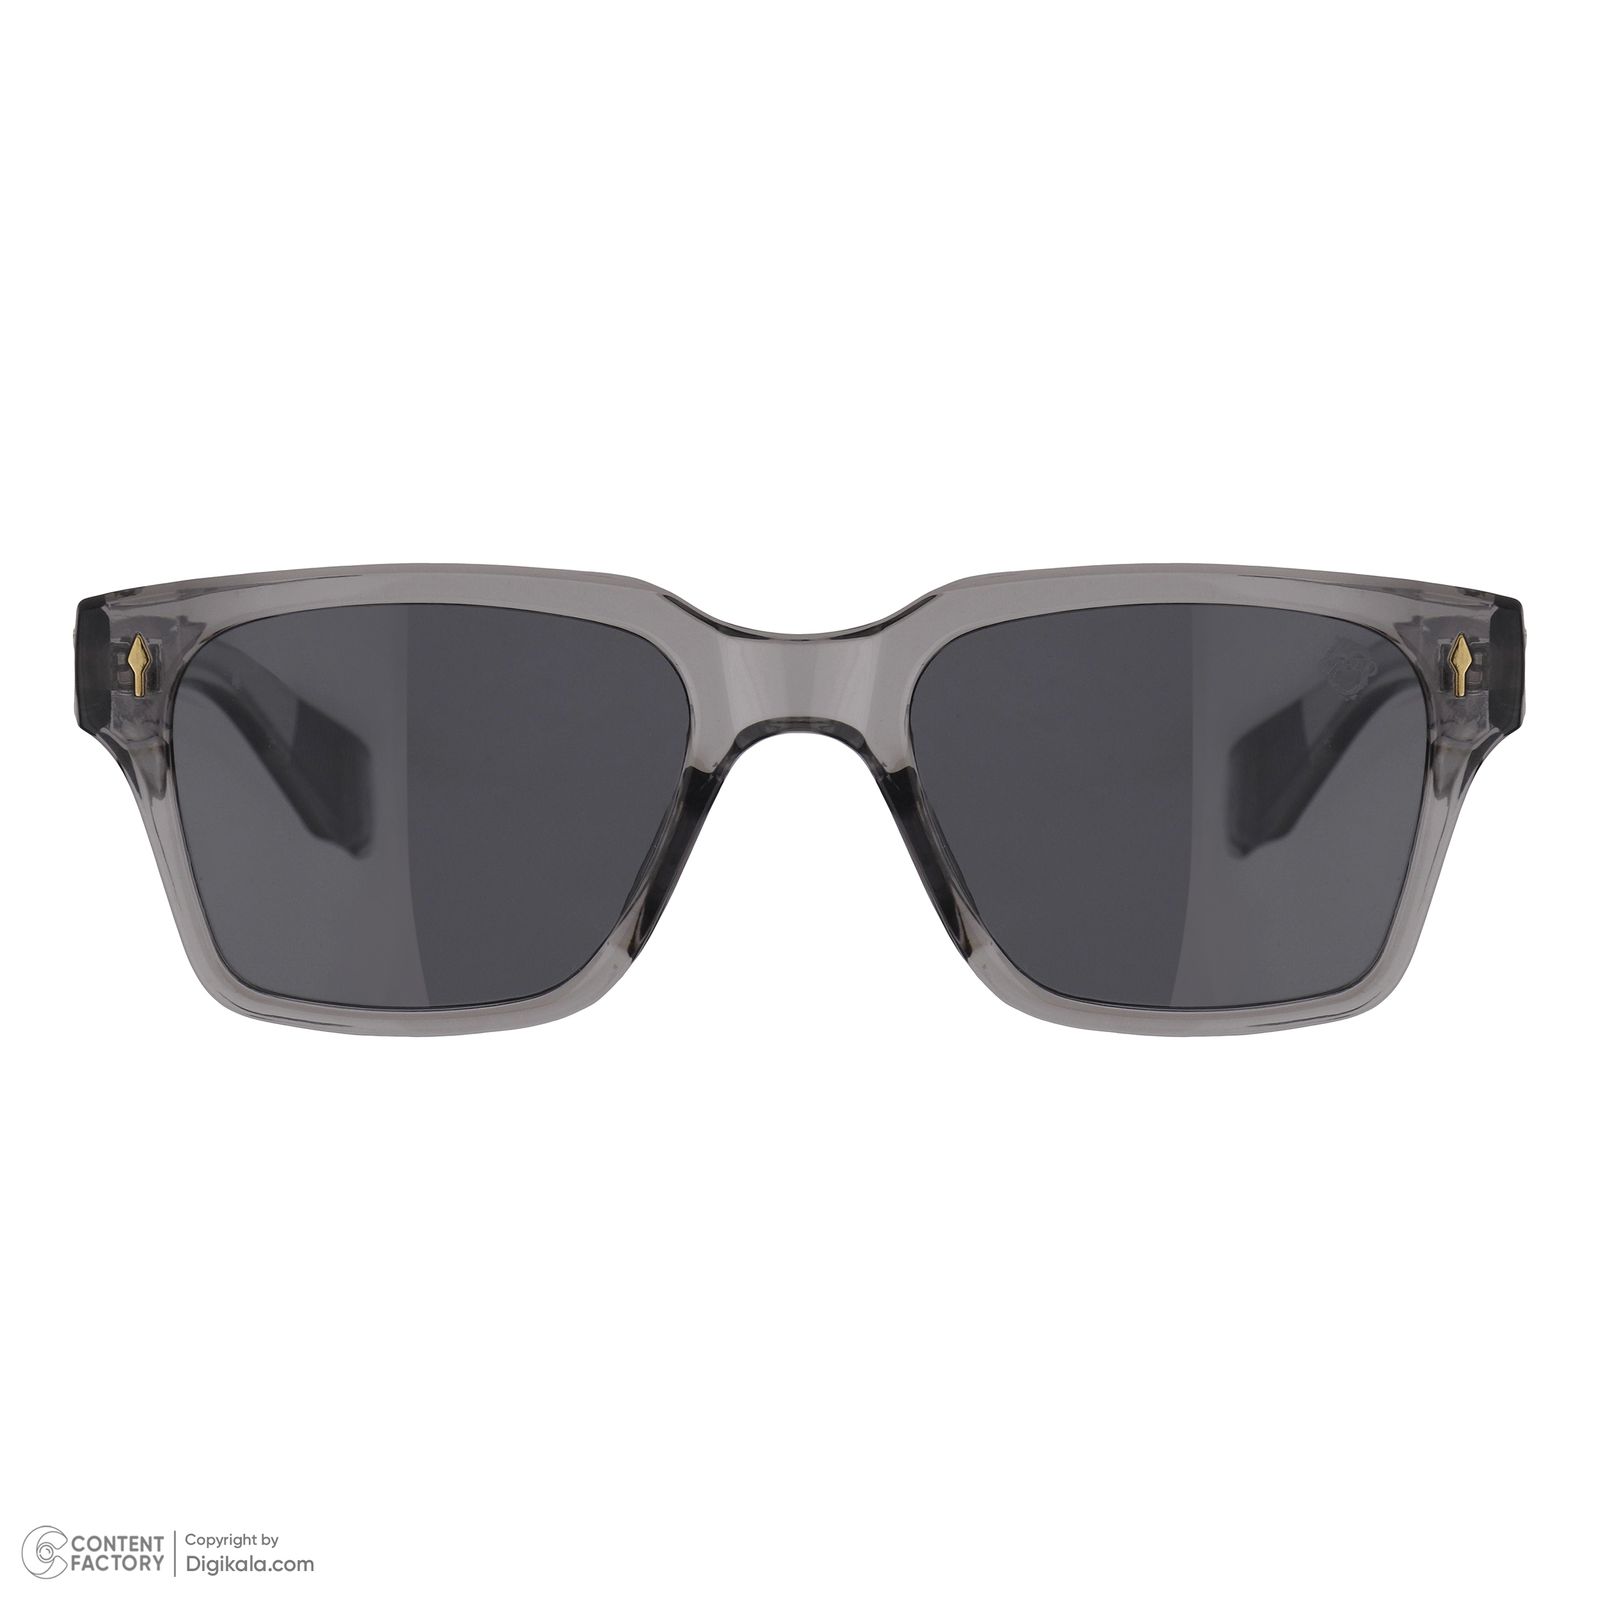 عینک آفتابی مستر مانکی مدل 6012 gr -  - 3